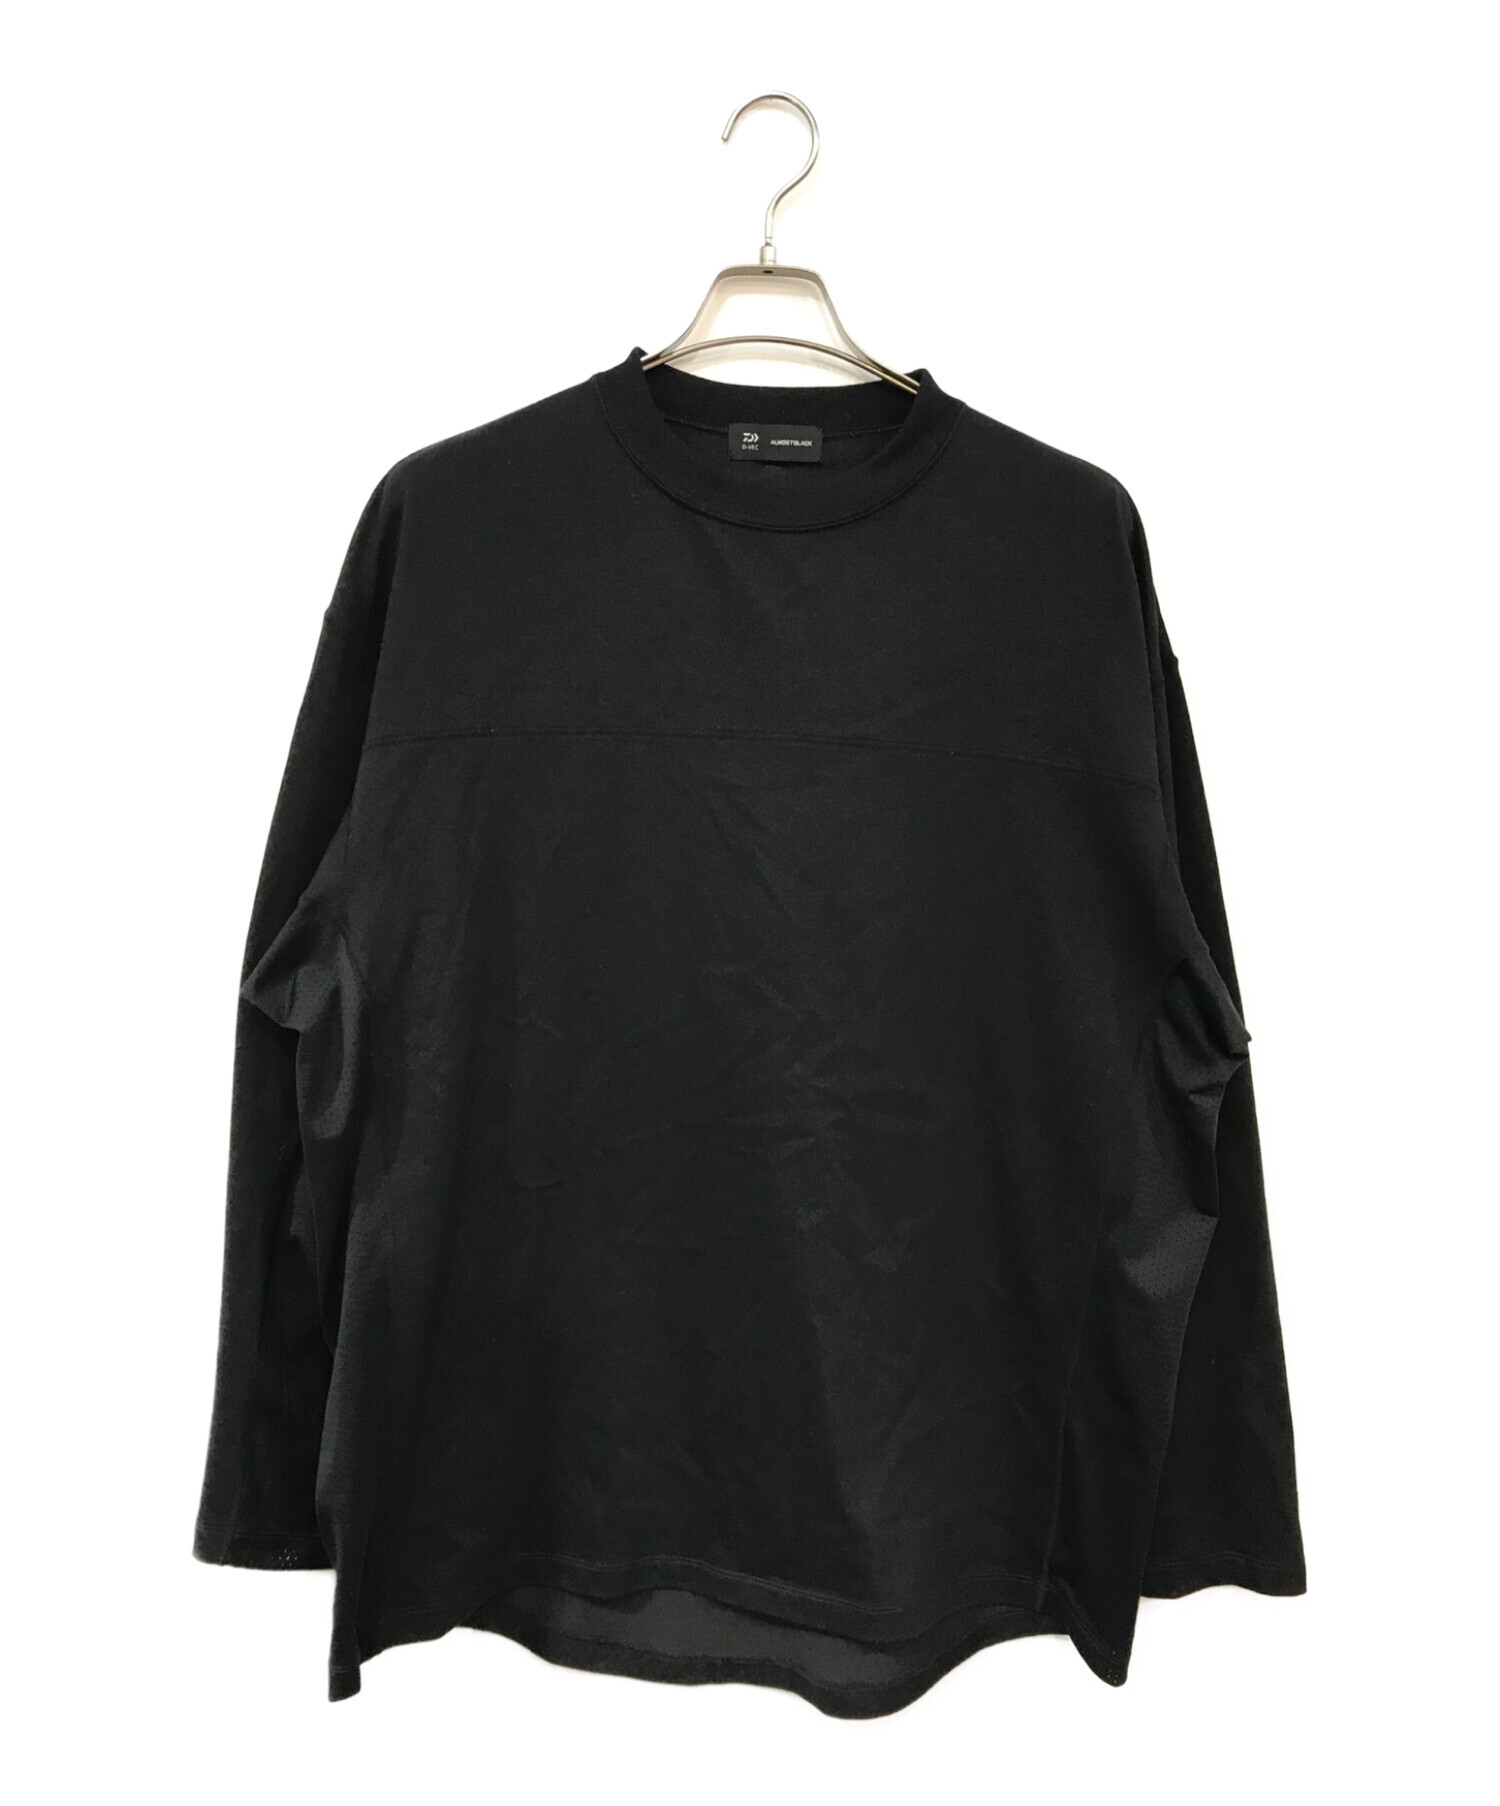 D-VEC (ディーベック) ALMOSTBLACK (オールモストブラック) コットンプレーティングロングTシャツ ブラック サイズ:3